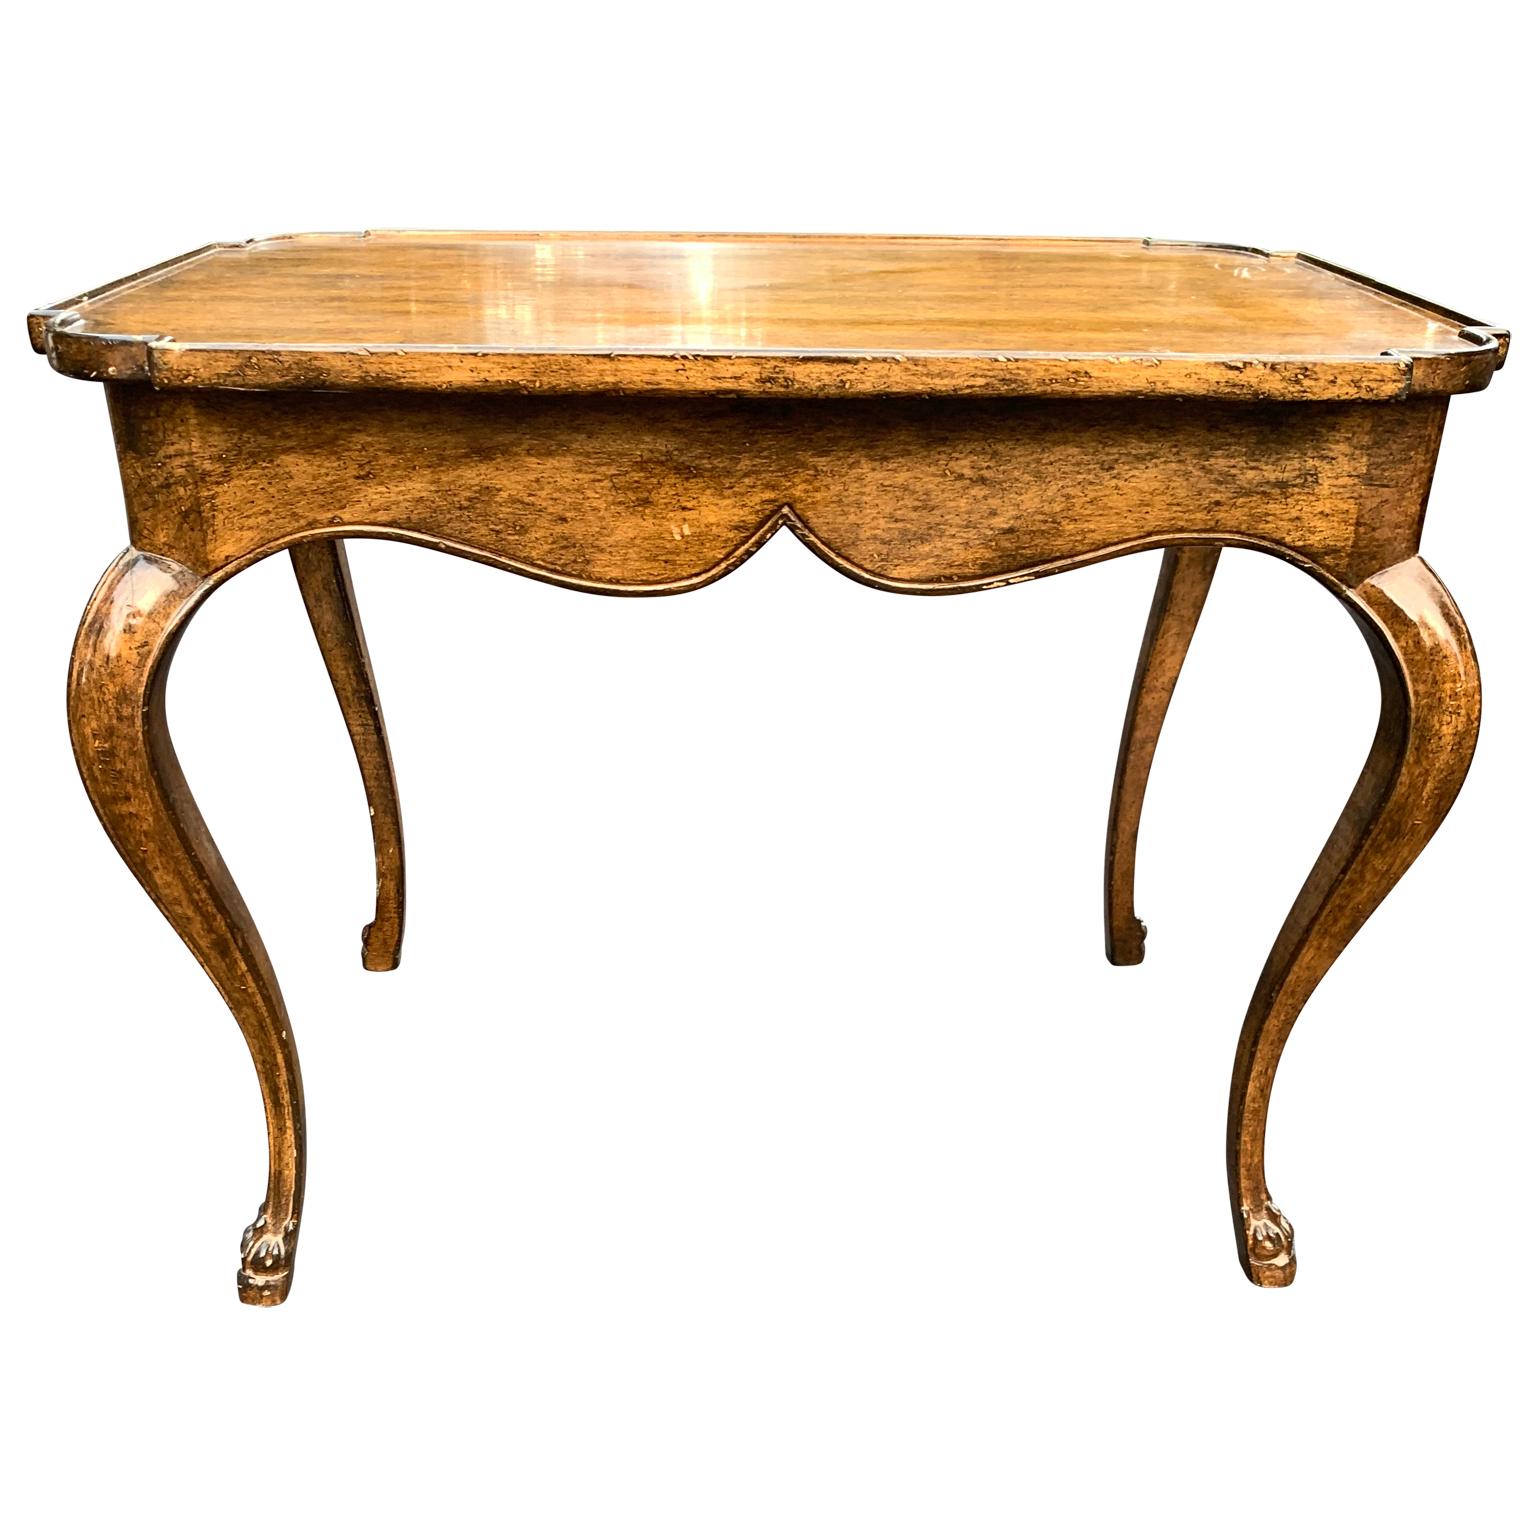 Table d'appoint rectangulaire de style baroque français